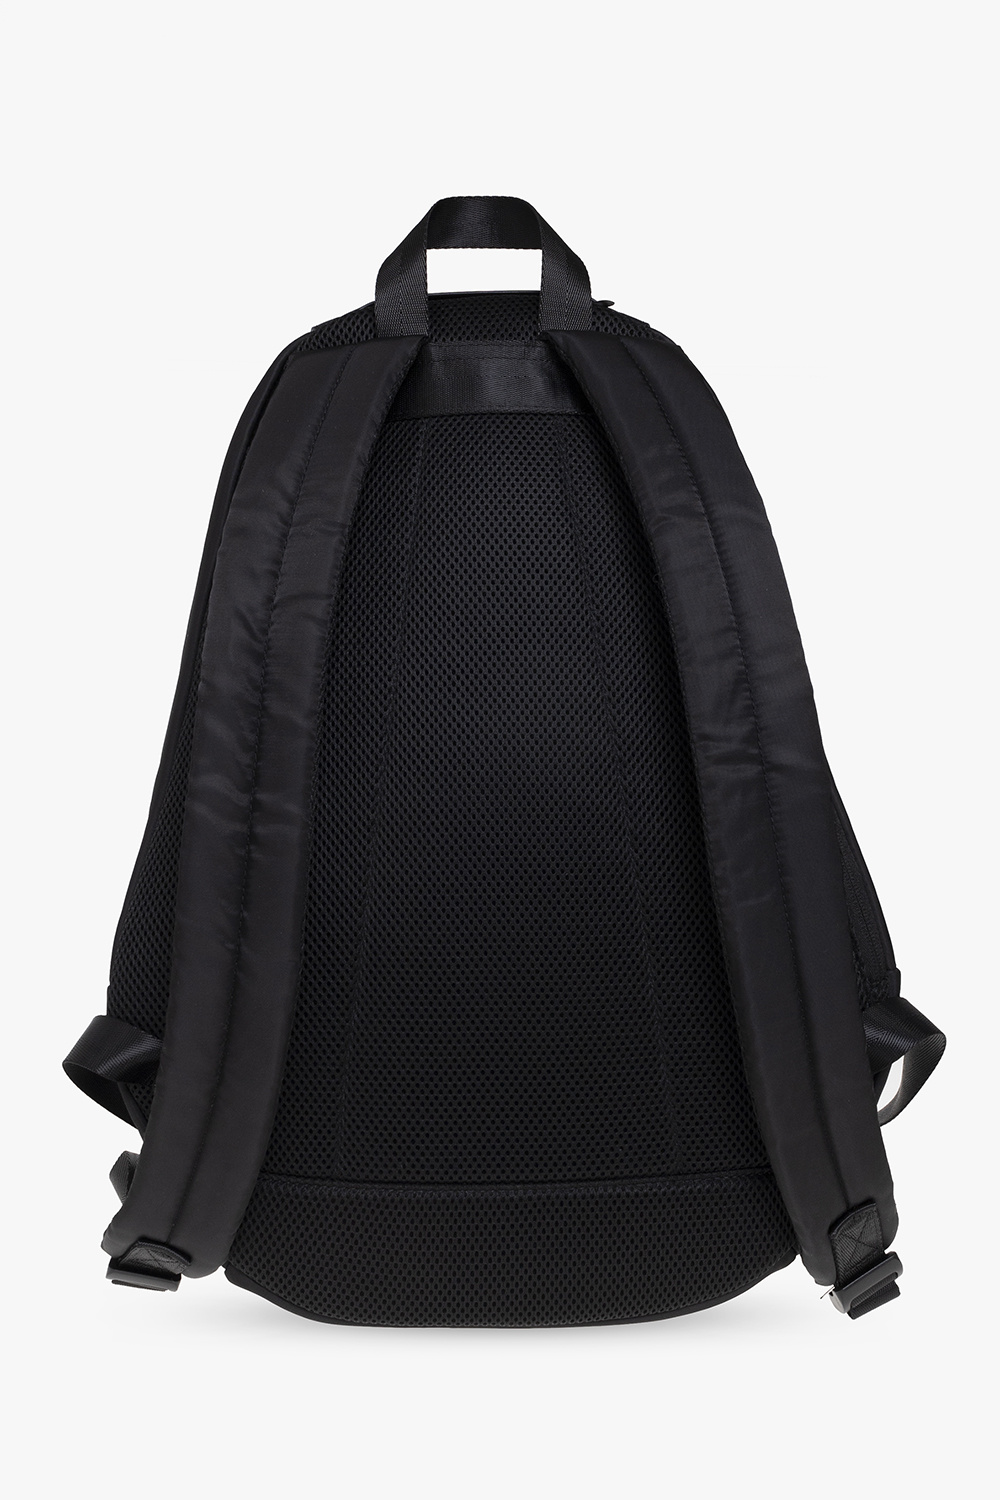 Diesel 'RINKE' backpack | Men's Bags | Vitkac